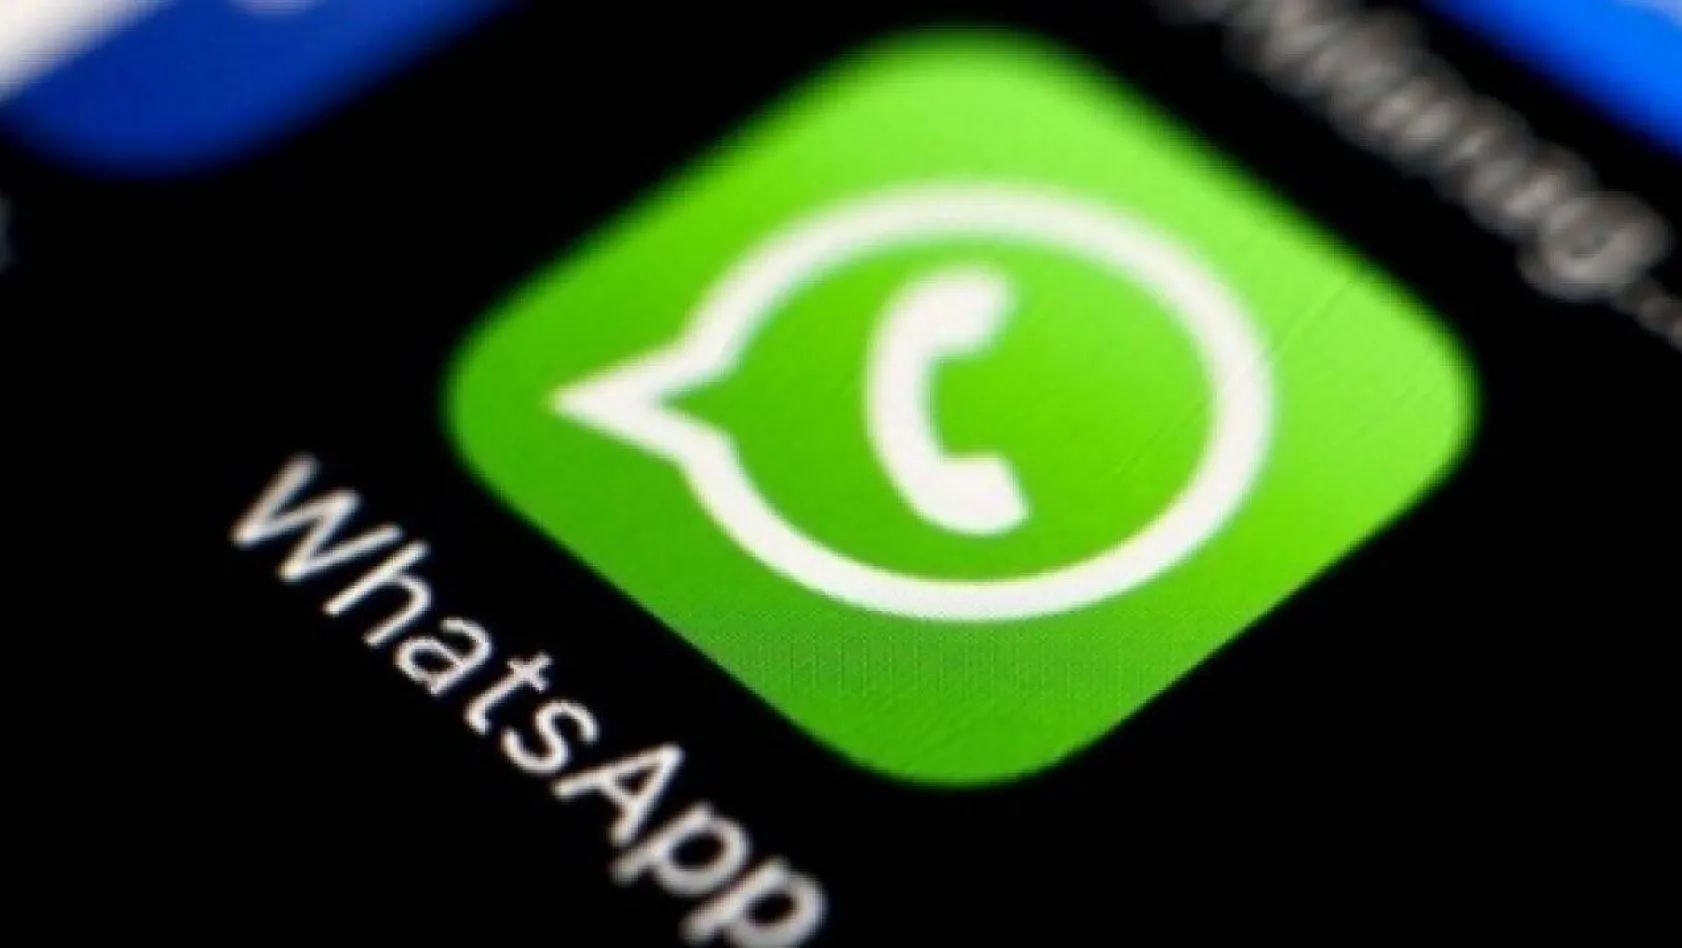 Tüm WhatsApp kullanıcılarını ilgilendiren flaş özellik devreye girdi